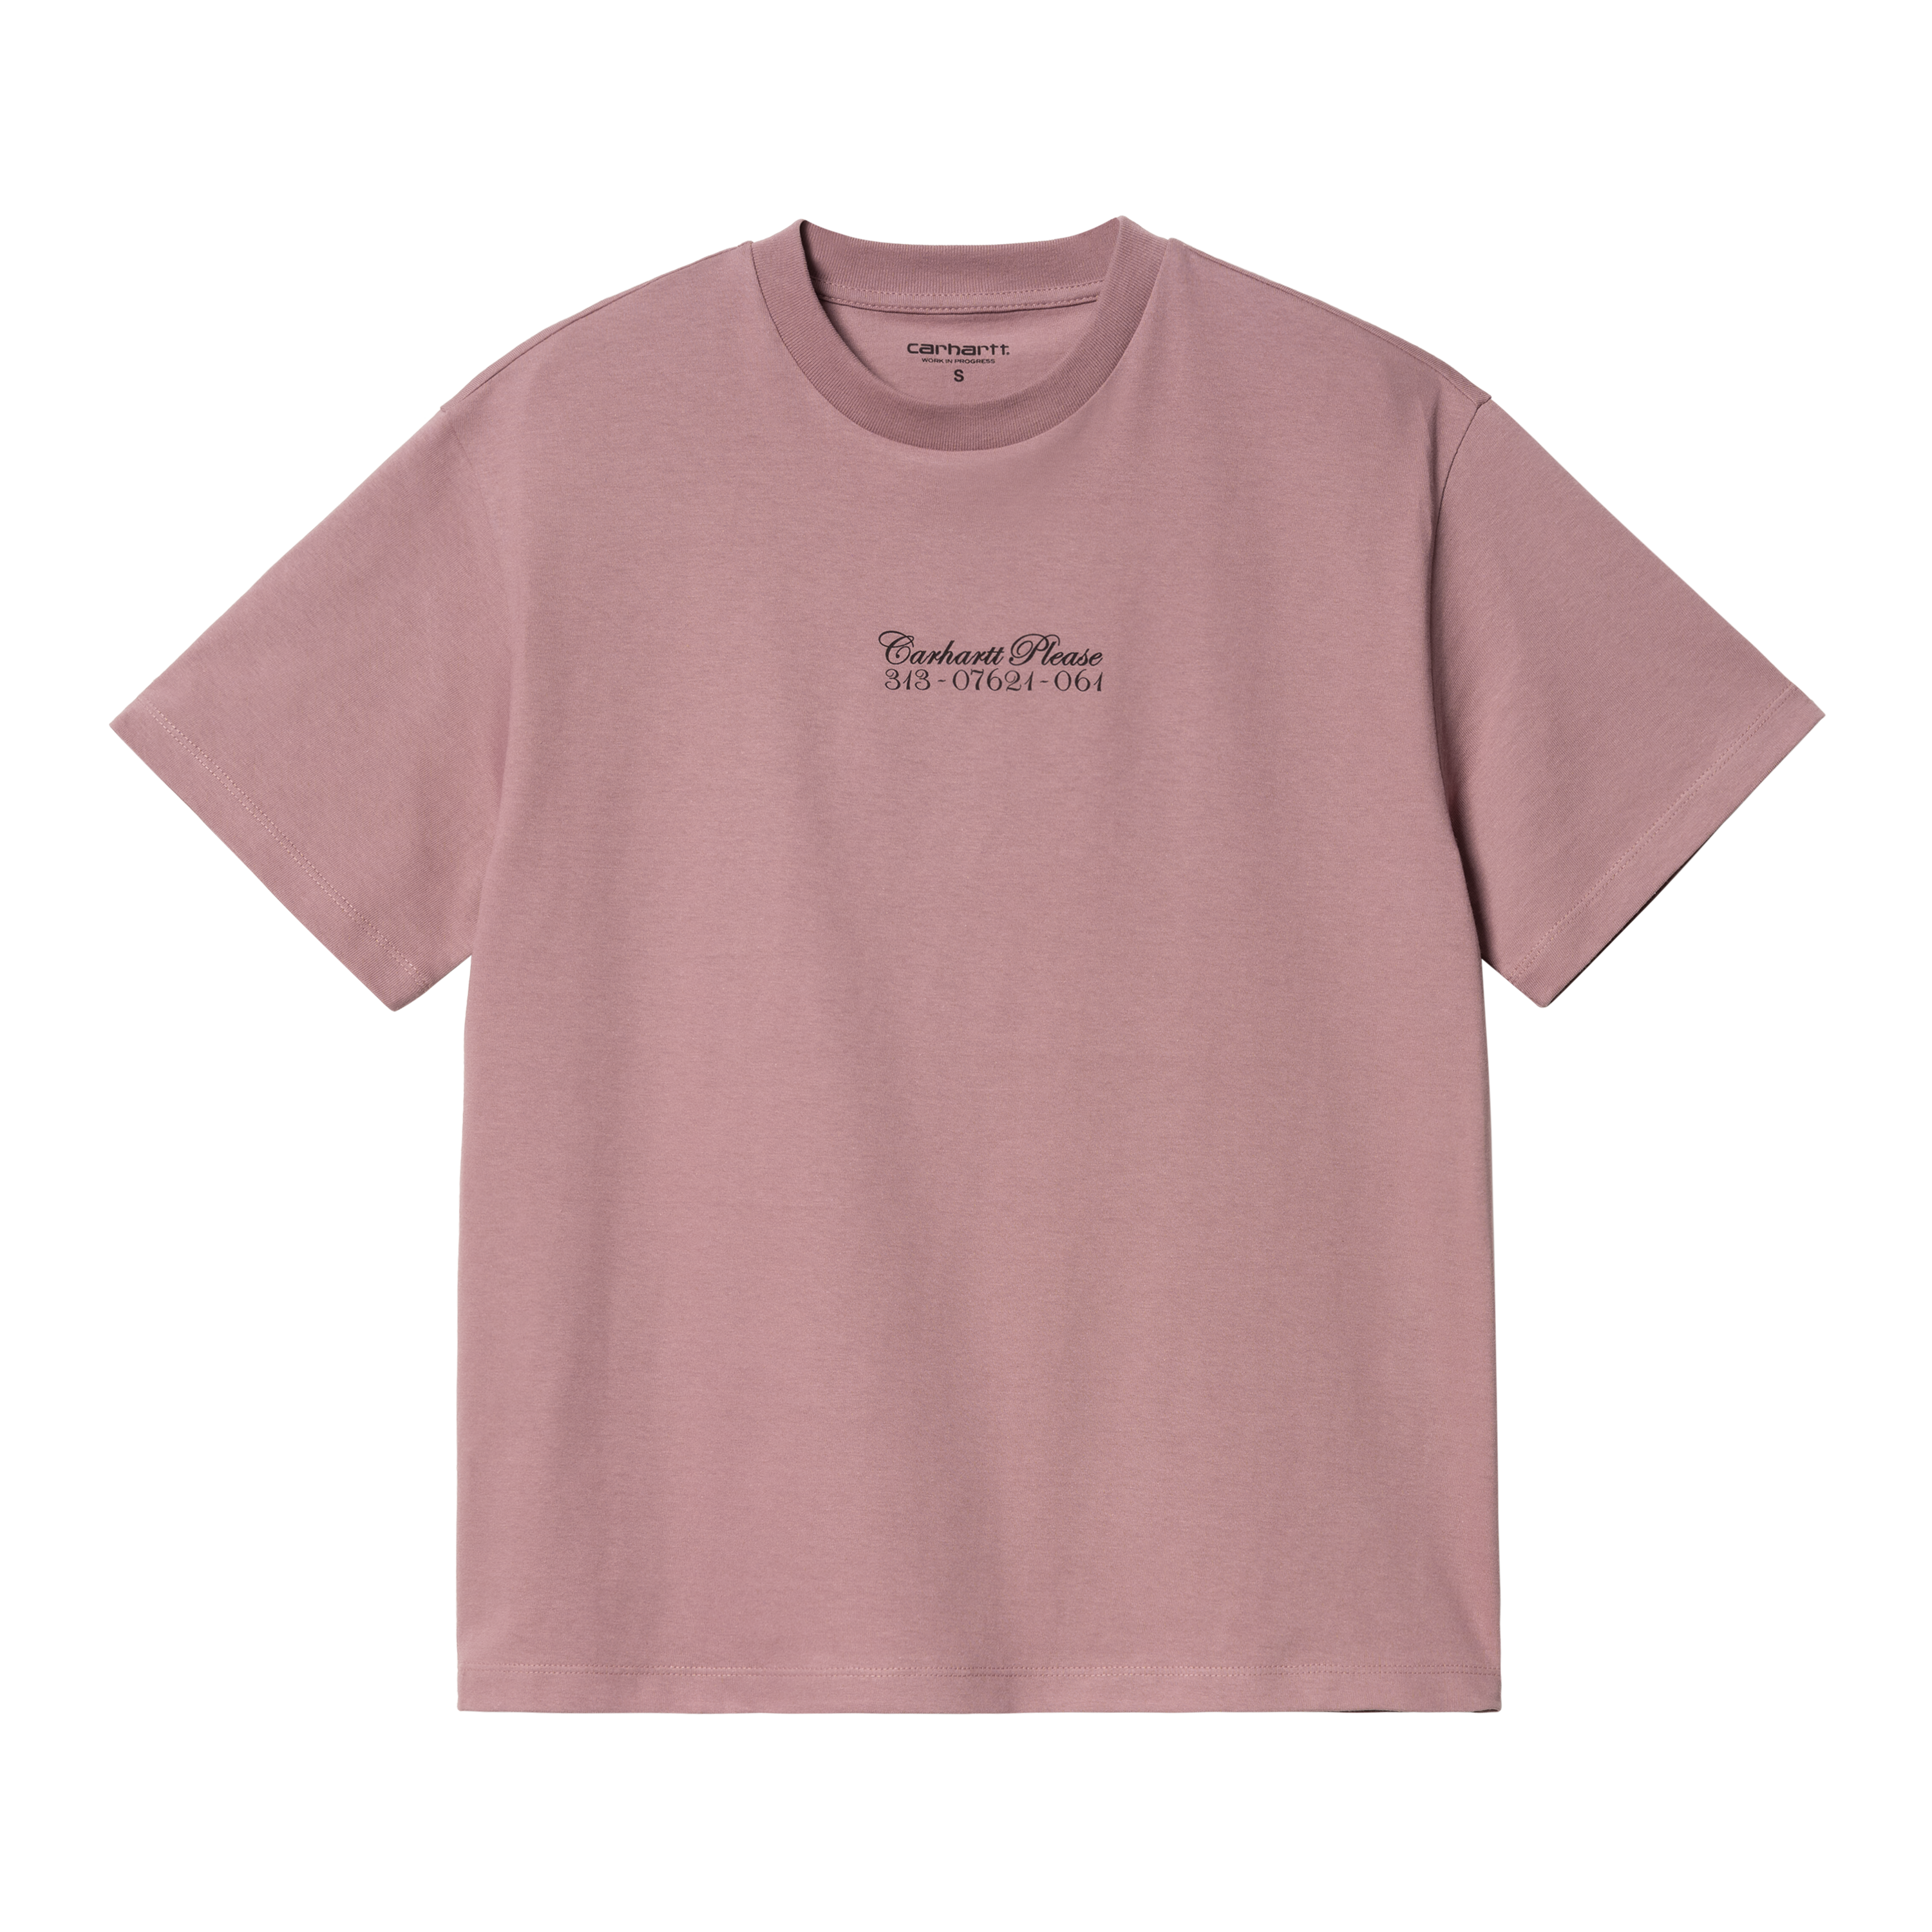 Carhartt WIP Women’s Short Sleeve Carhartt Please T-Shirt Rose